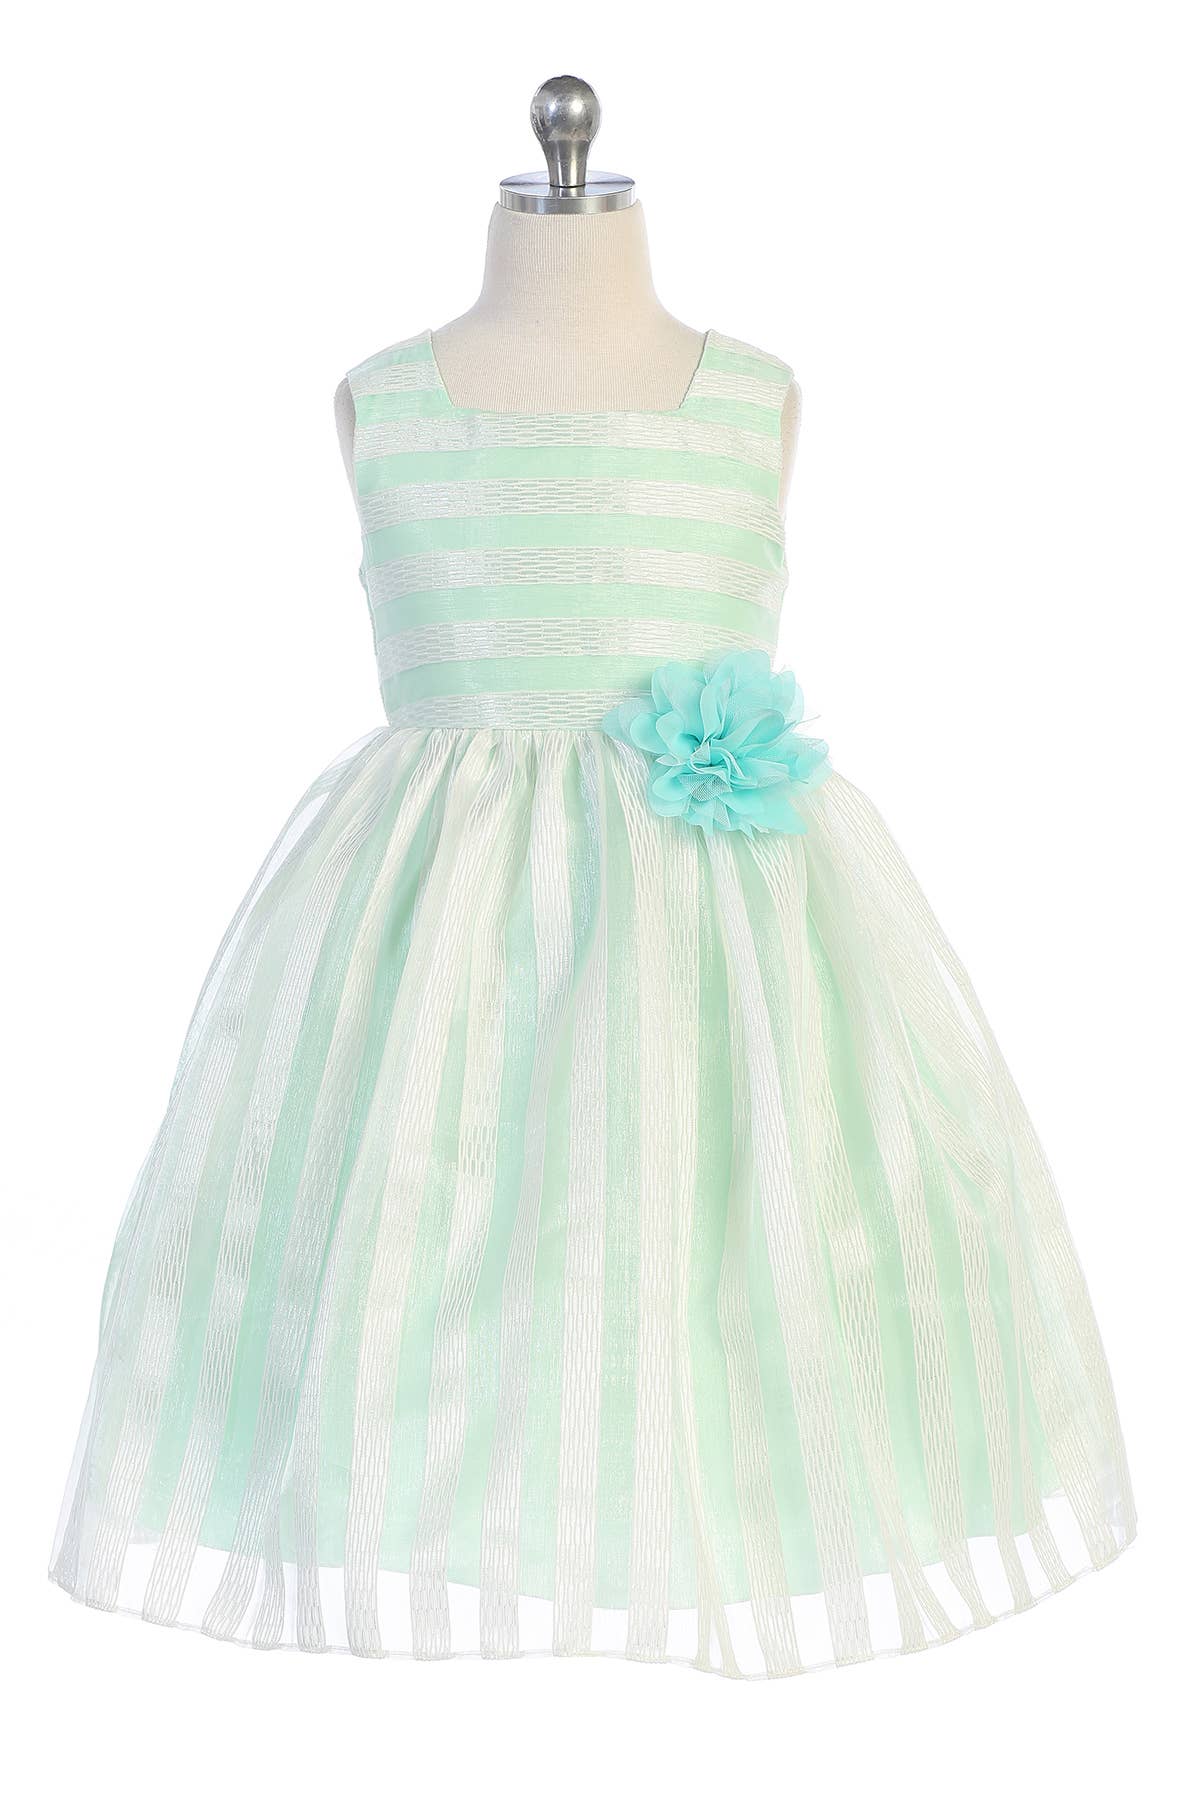 Mint - 2 Tone Stripe Dress